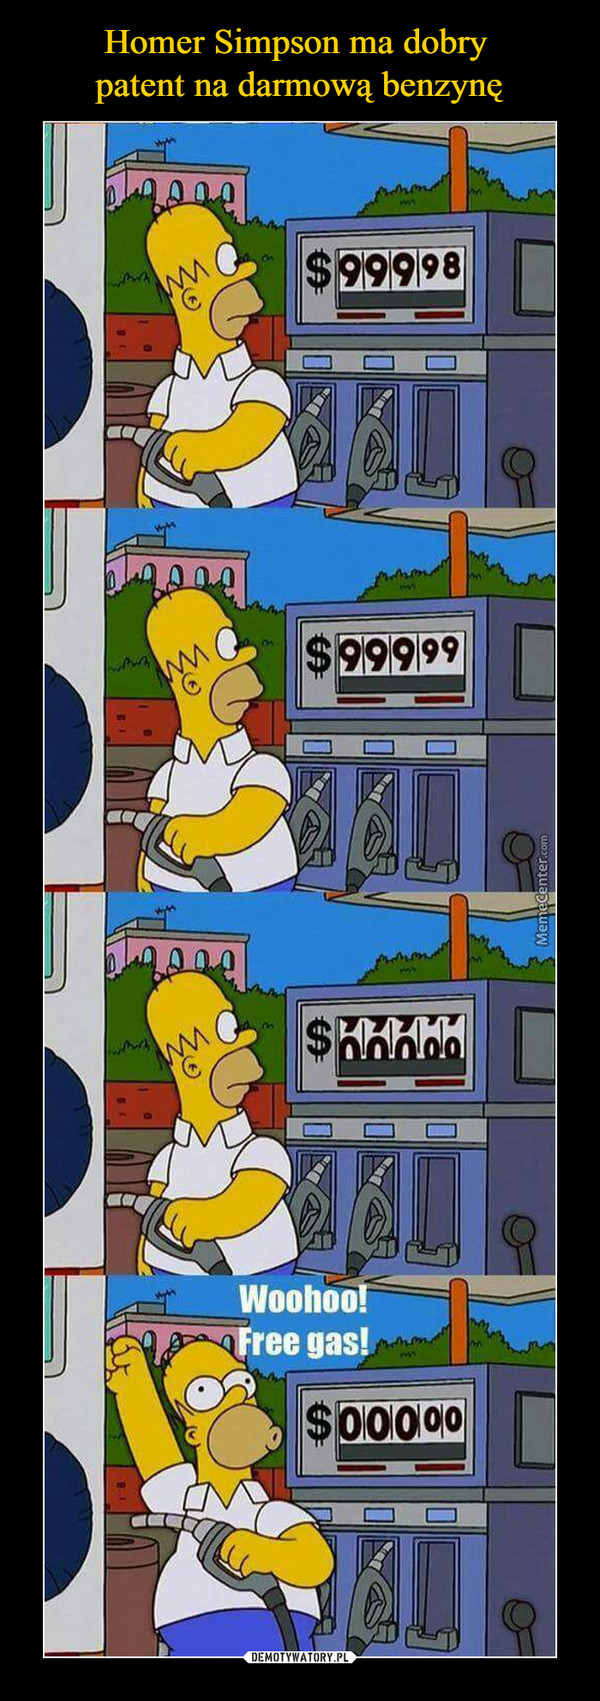 Homer Simpson ma dobry 
patent na darmową benzynę